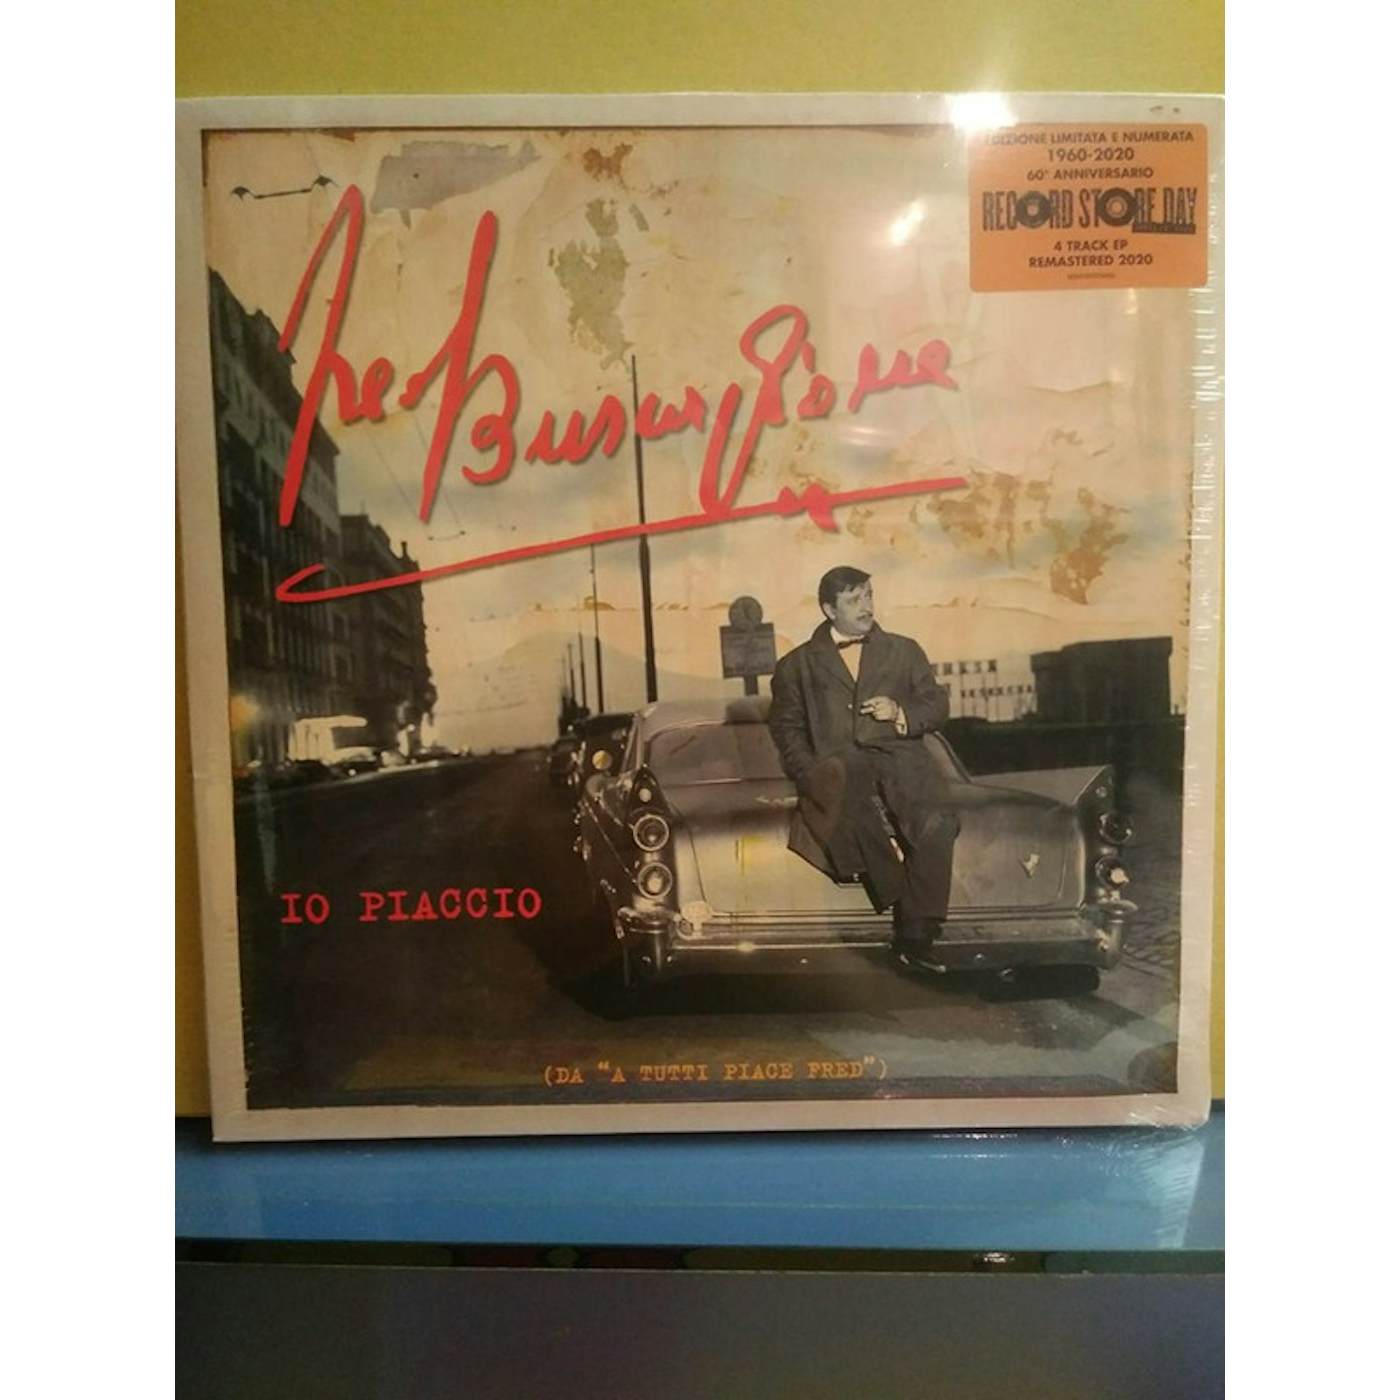 Fred Buscaglione IO PIACCIO (DA A TUTTI PIACE FRED) Vinyl Record